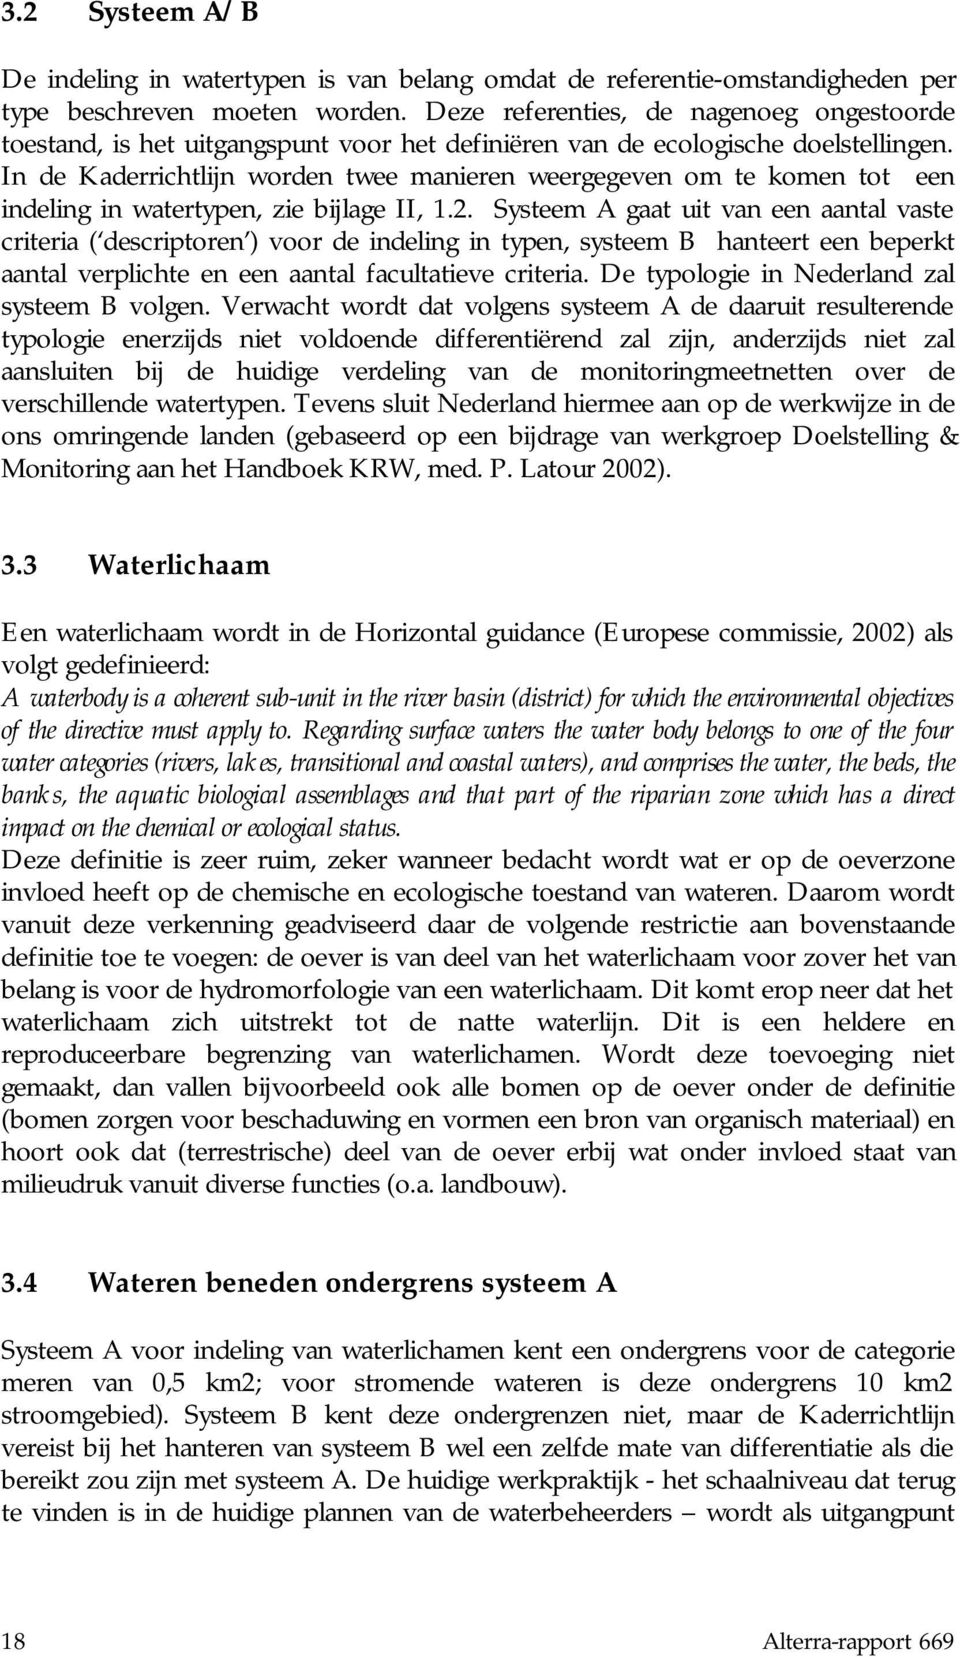 In de Kaderrichtlijn worden twee manieren weergegeven om te komen tot een indeling in watertypen, zie bijlage II, 1.2.